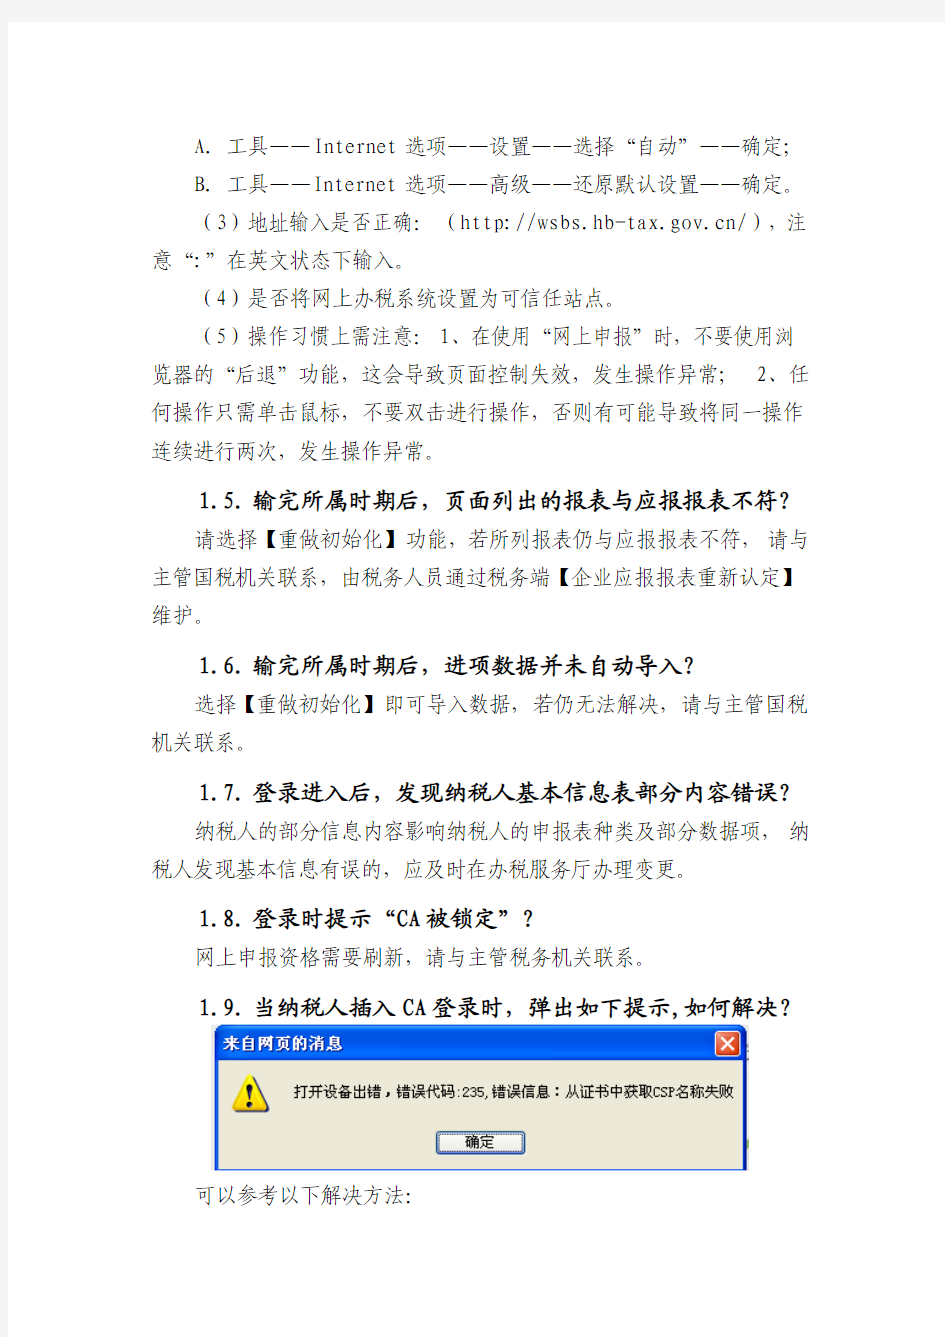 湖北省网上申报系统常见问题集